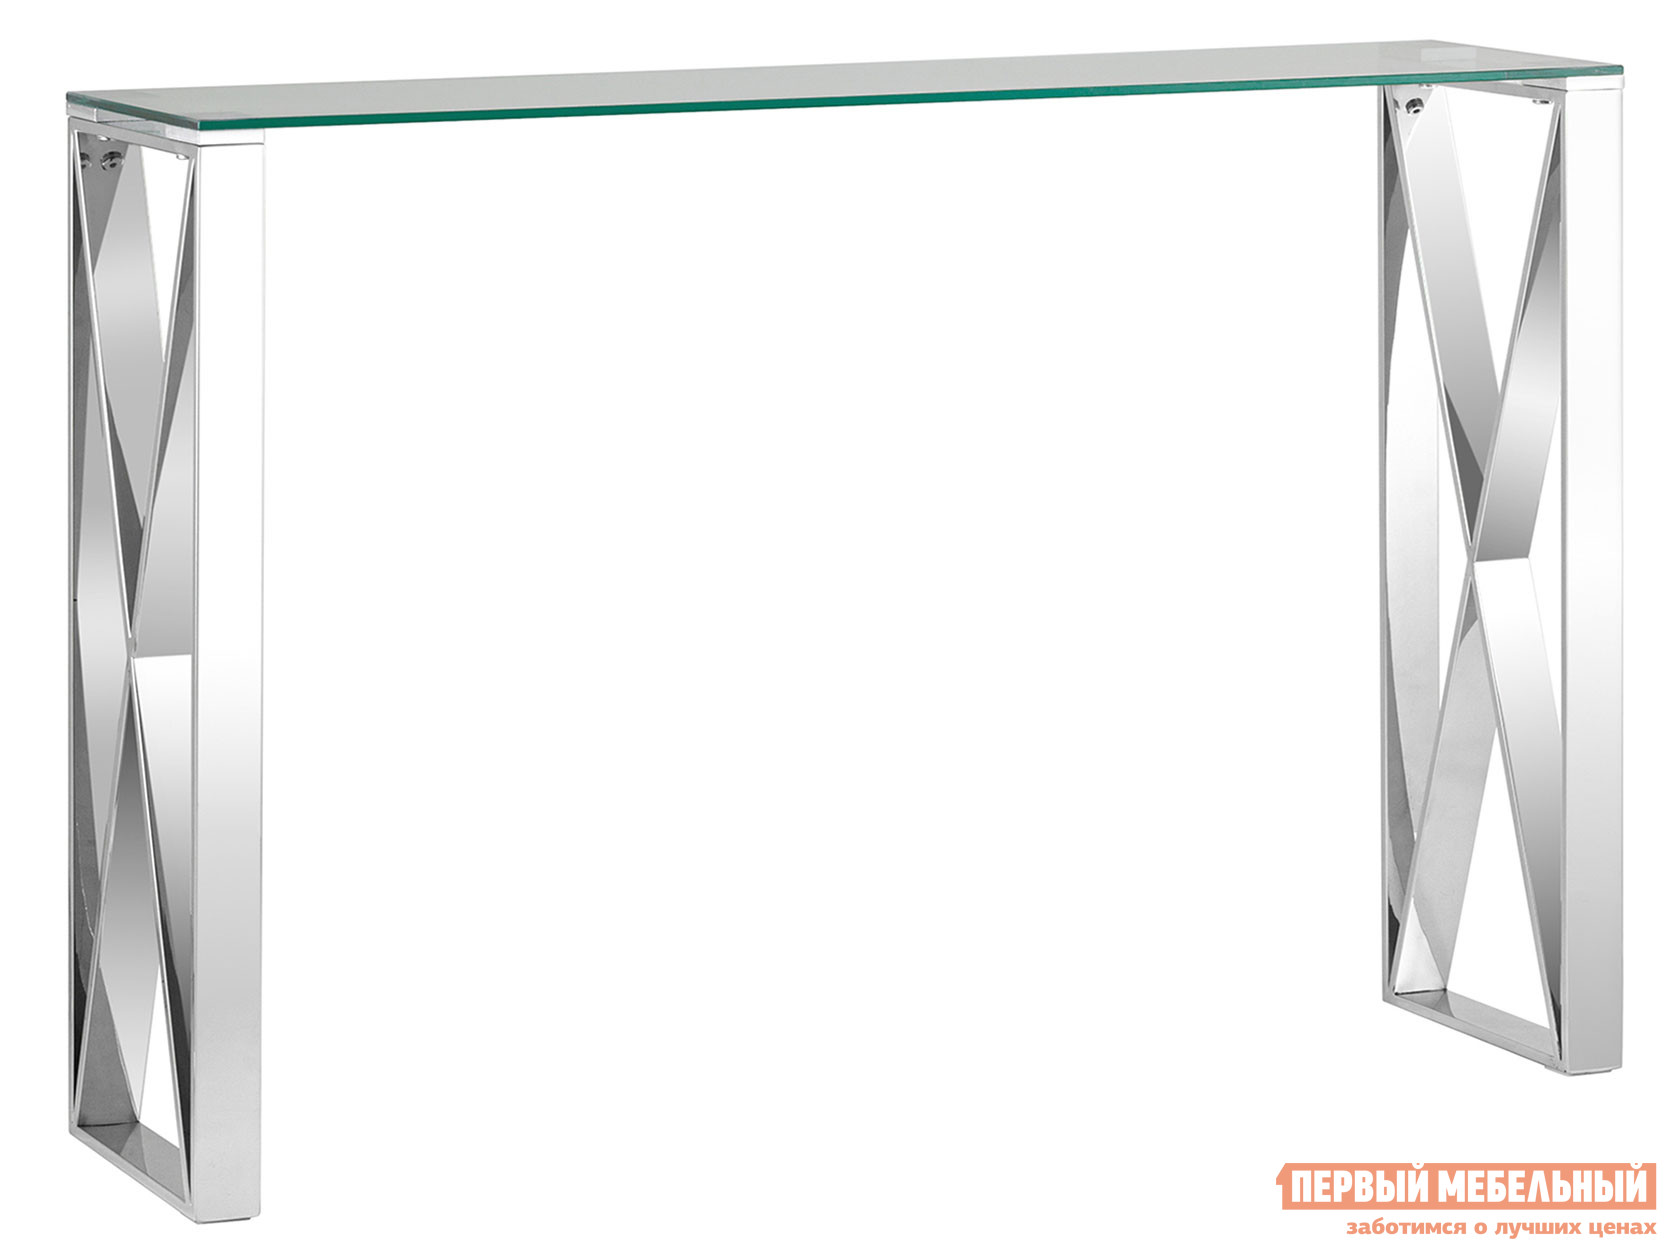 Консоль  Кросс Прозрачное стекло / Сталь, серебро от Первый Мебельный